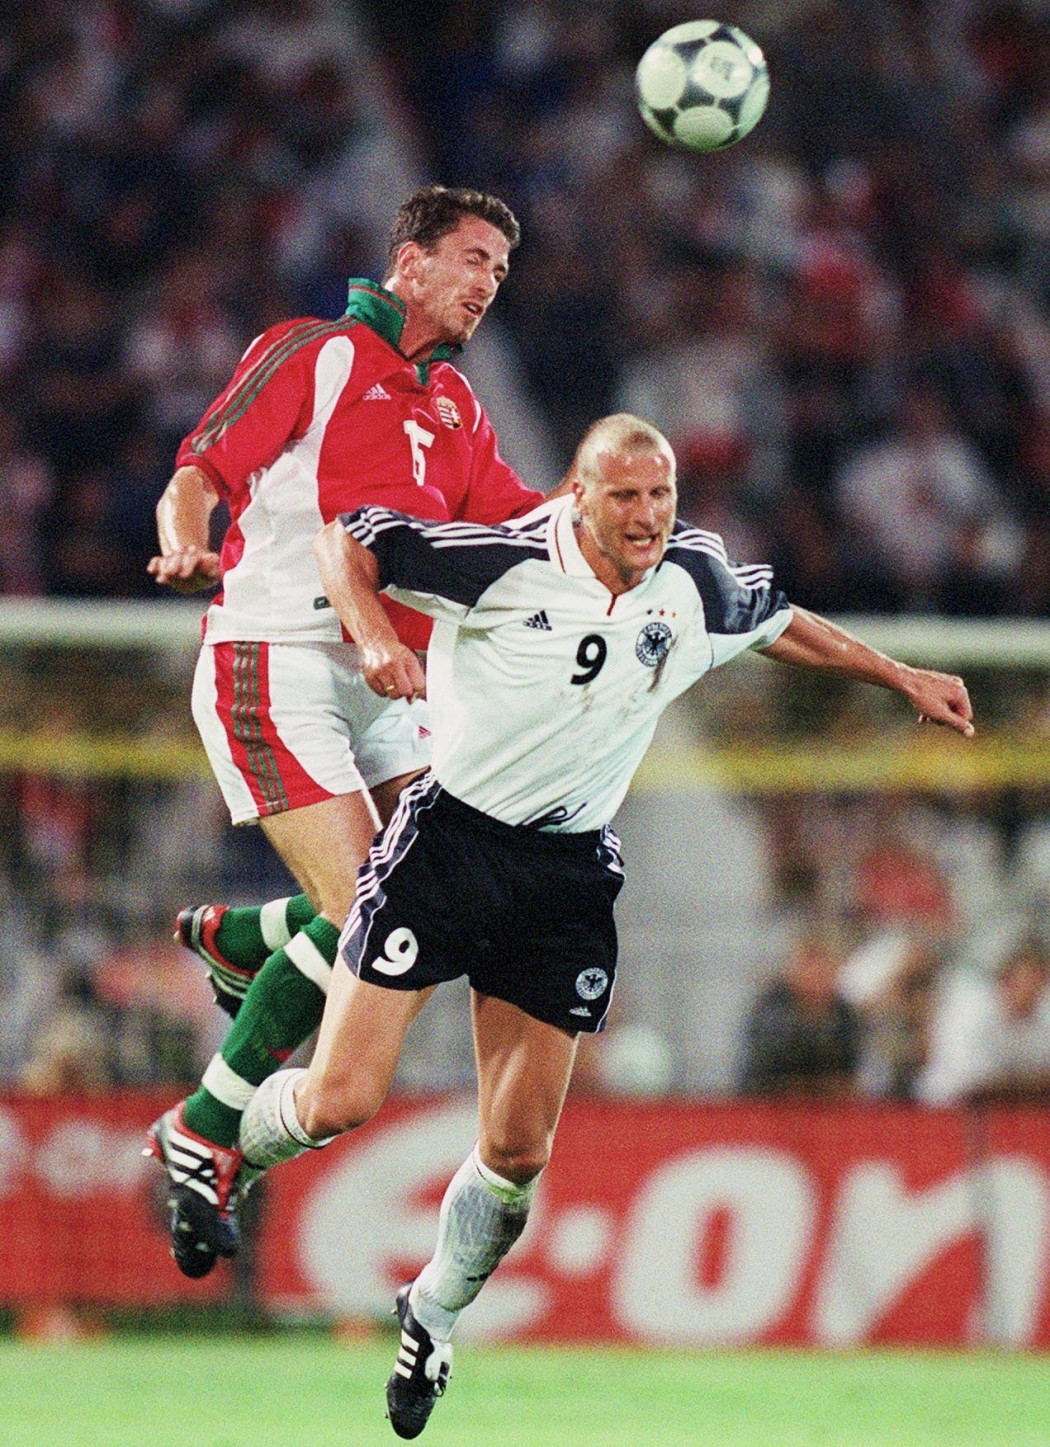 Hrutka a válogatott játékosaként egy Németország elleni mérkőzésen 2001-ben – Fotó: Andreas Rentz / Bongarts / Getty Images